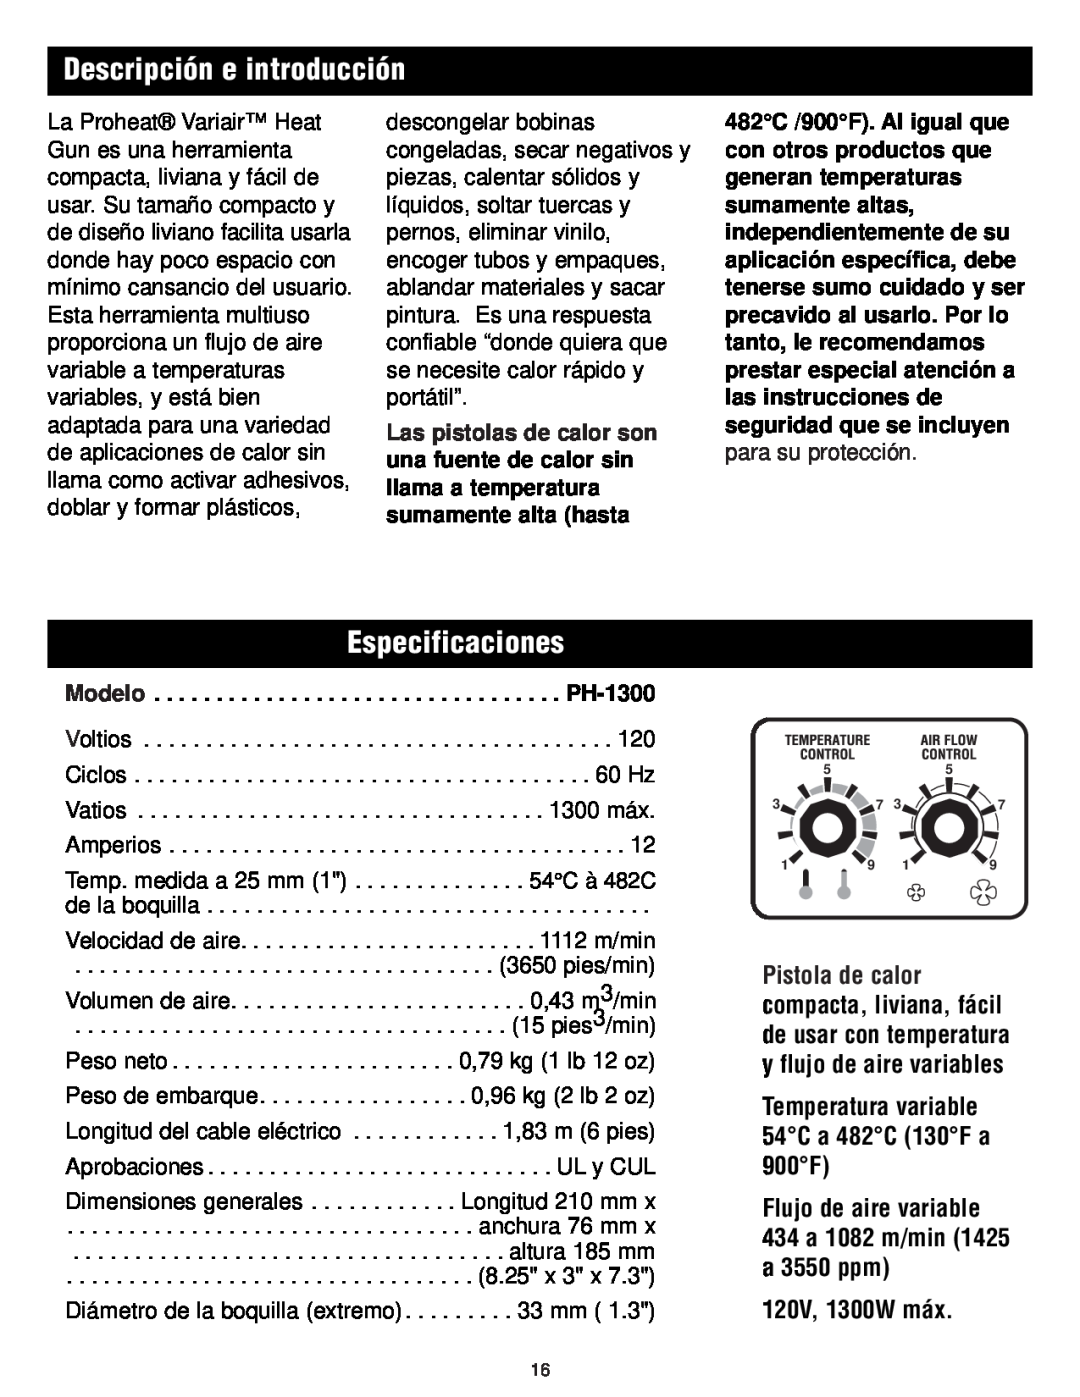 Master Appliance 1425-3550 FPM130-900F instruction manual Descripción e introducción, Especificaciones, 120V, 1300W máx 